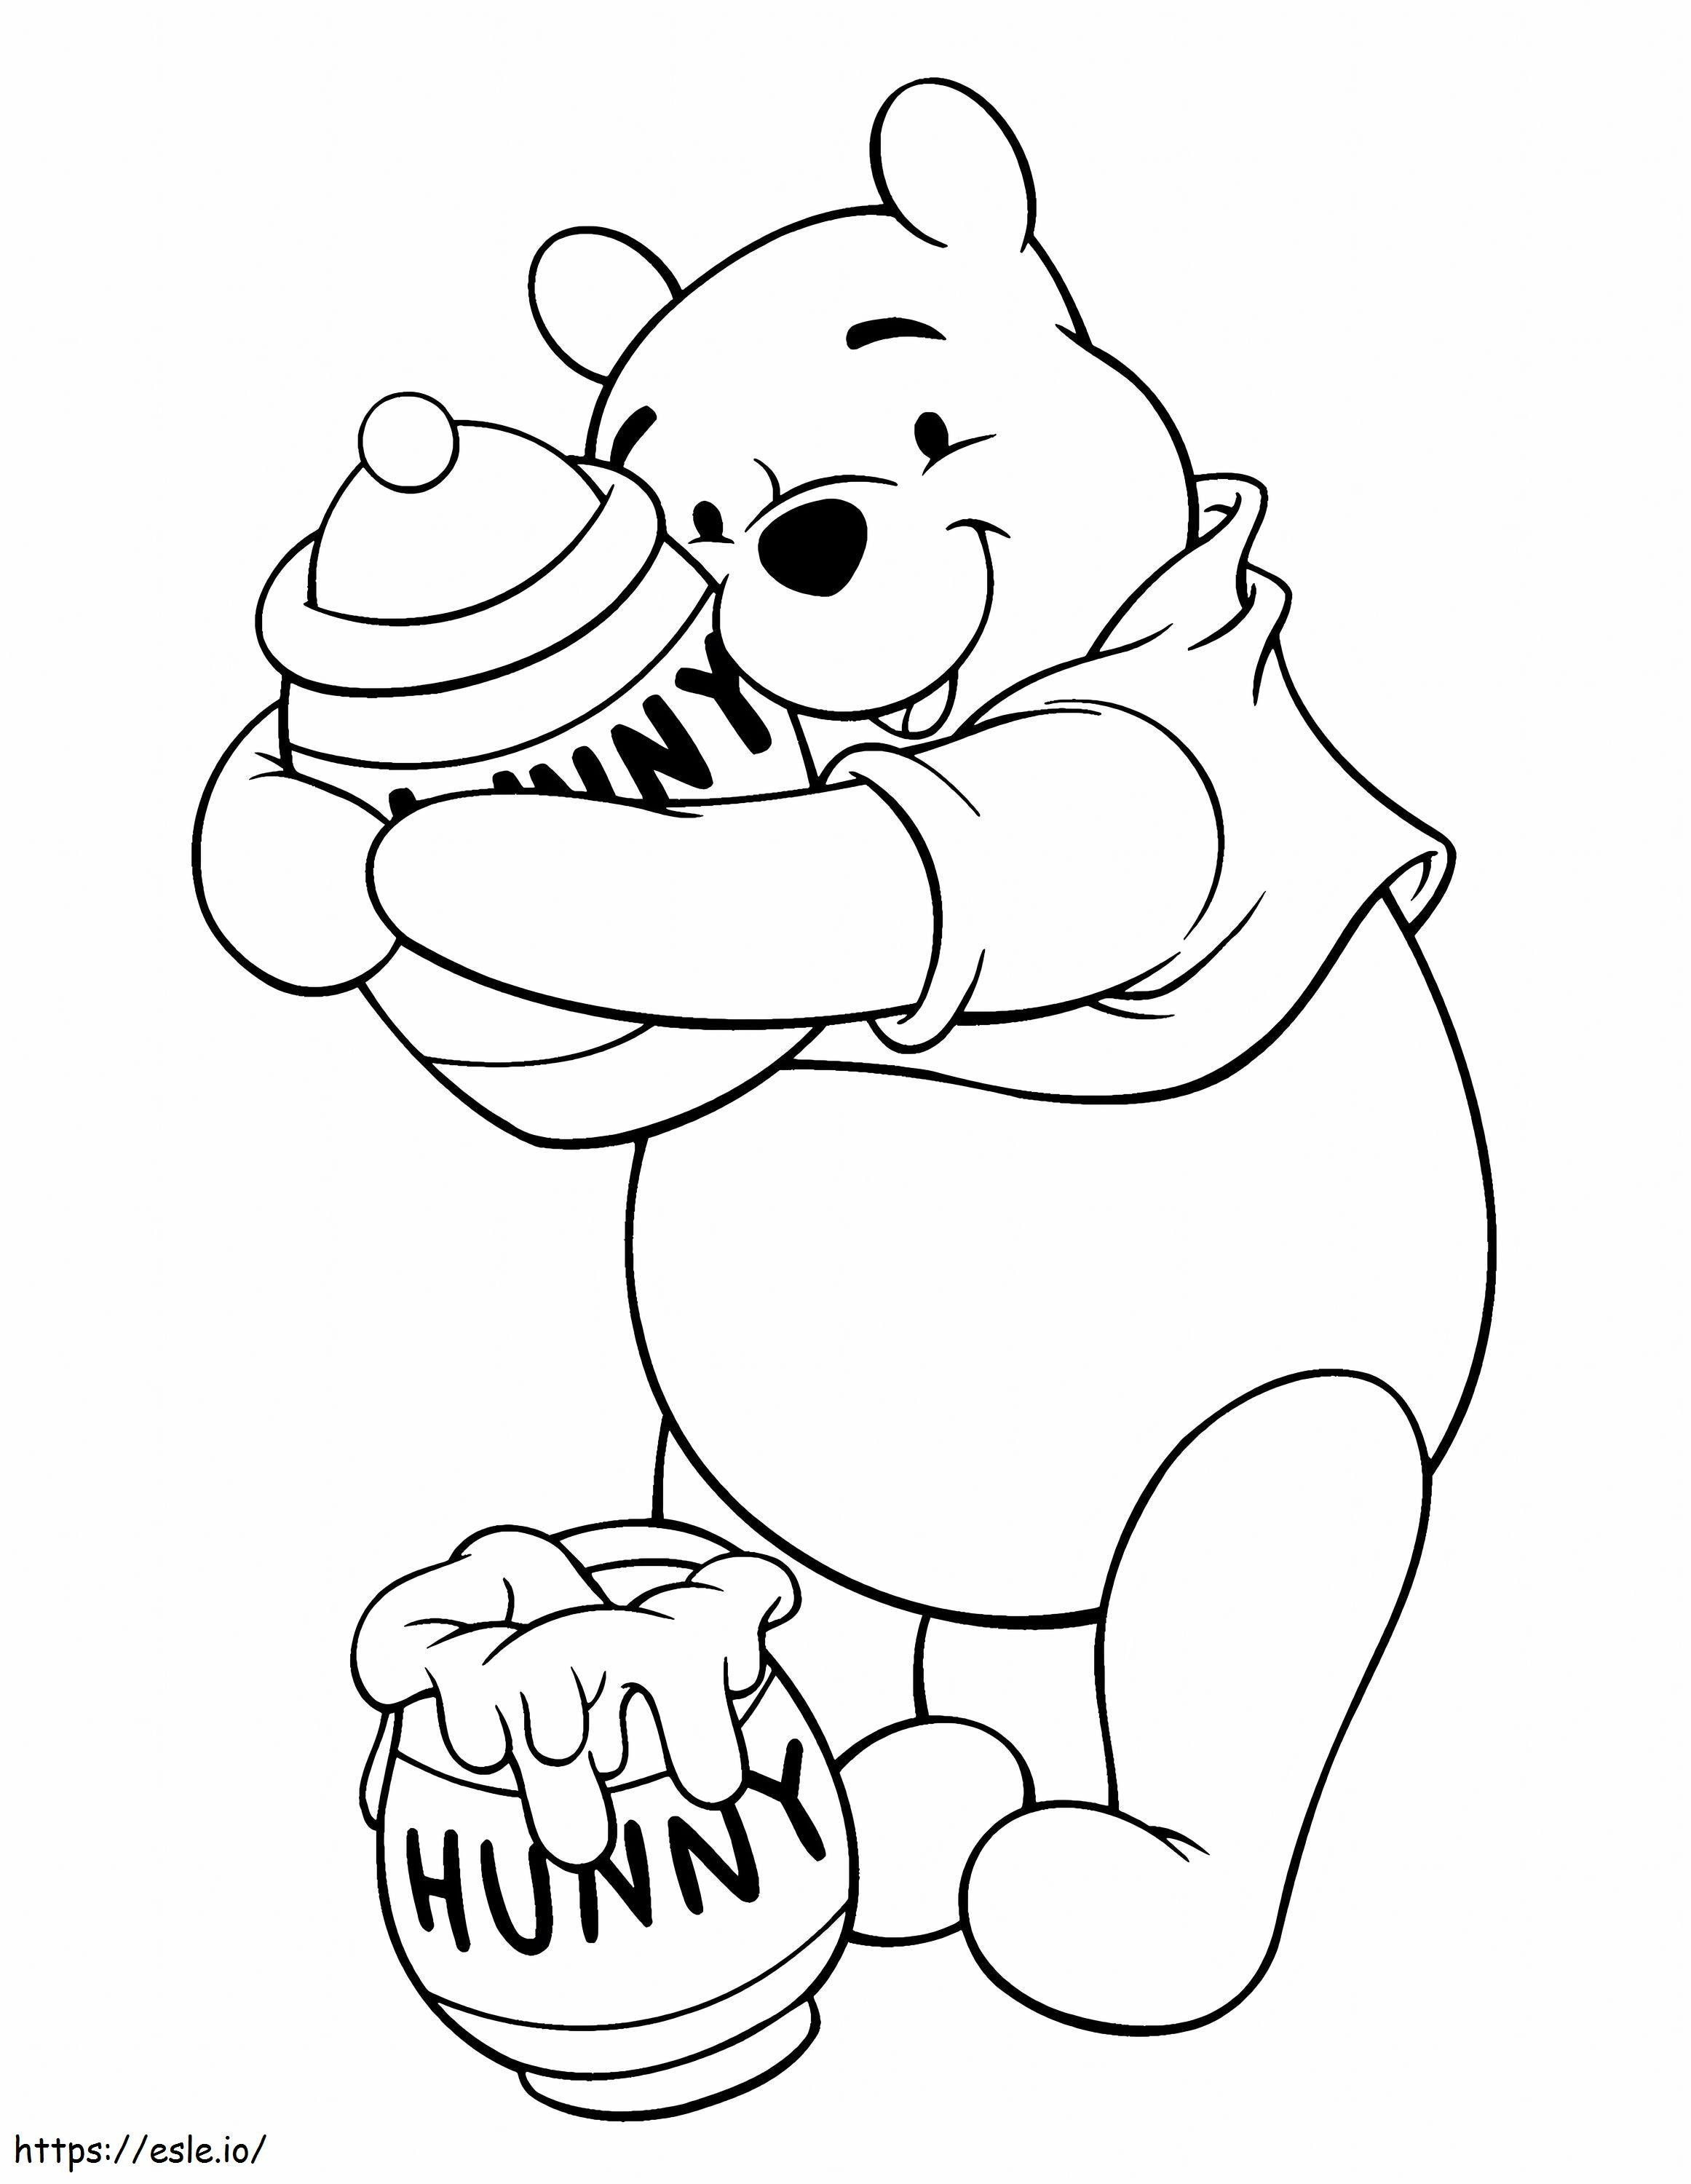 Winnie The Pooh e due vasetti di miele da colorare